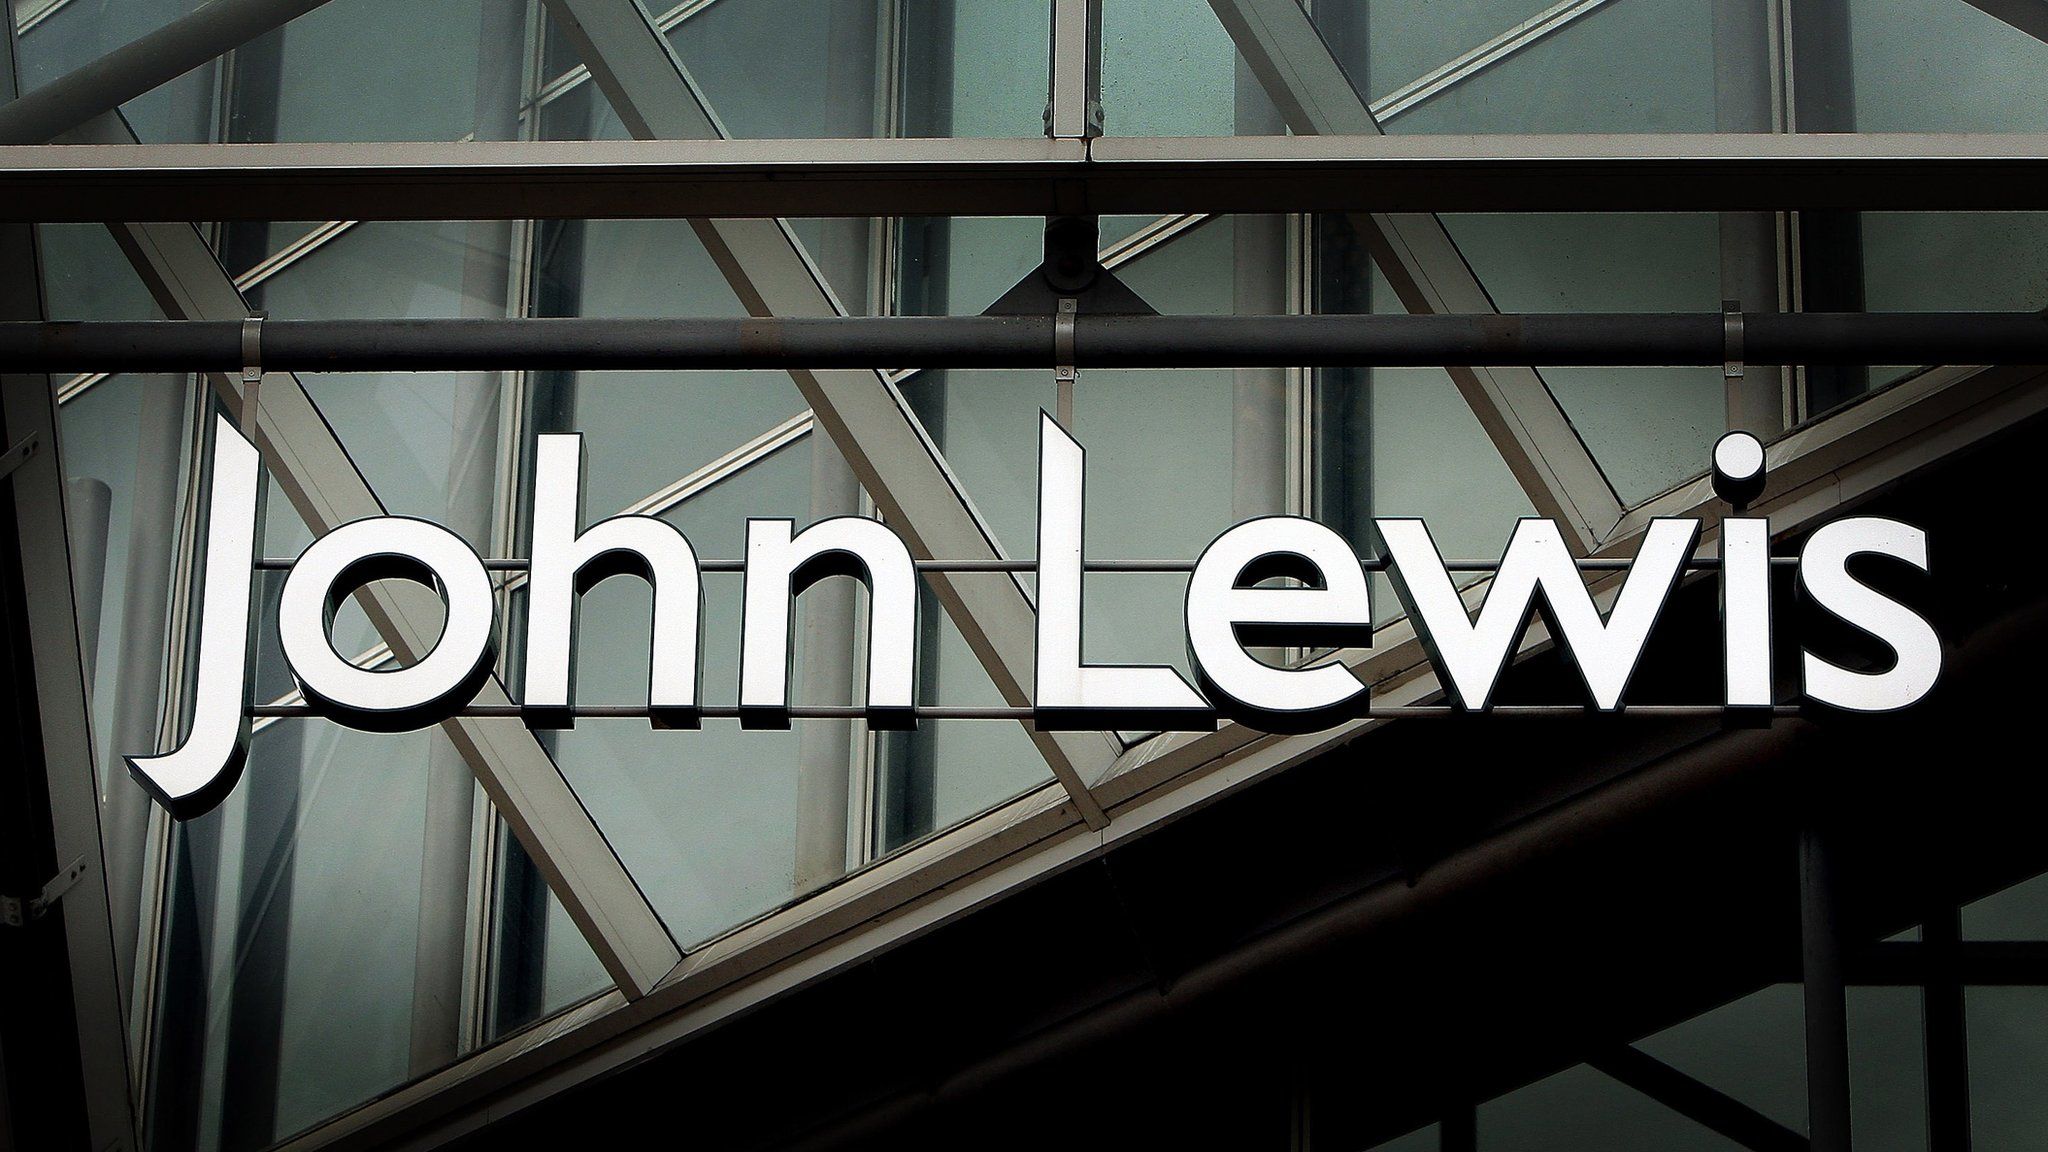 John Lewis sign